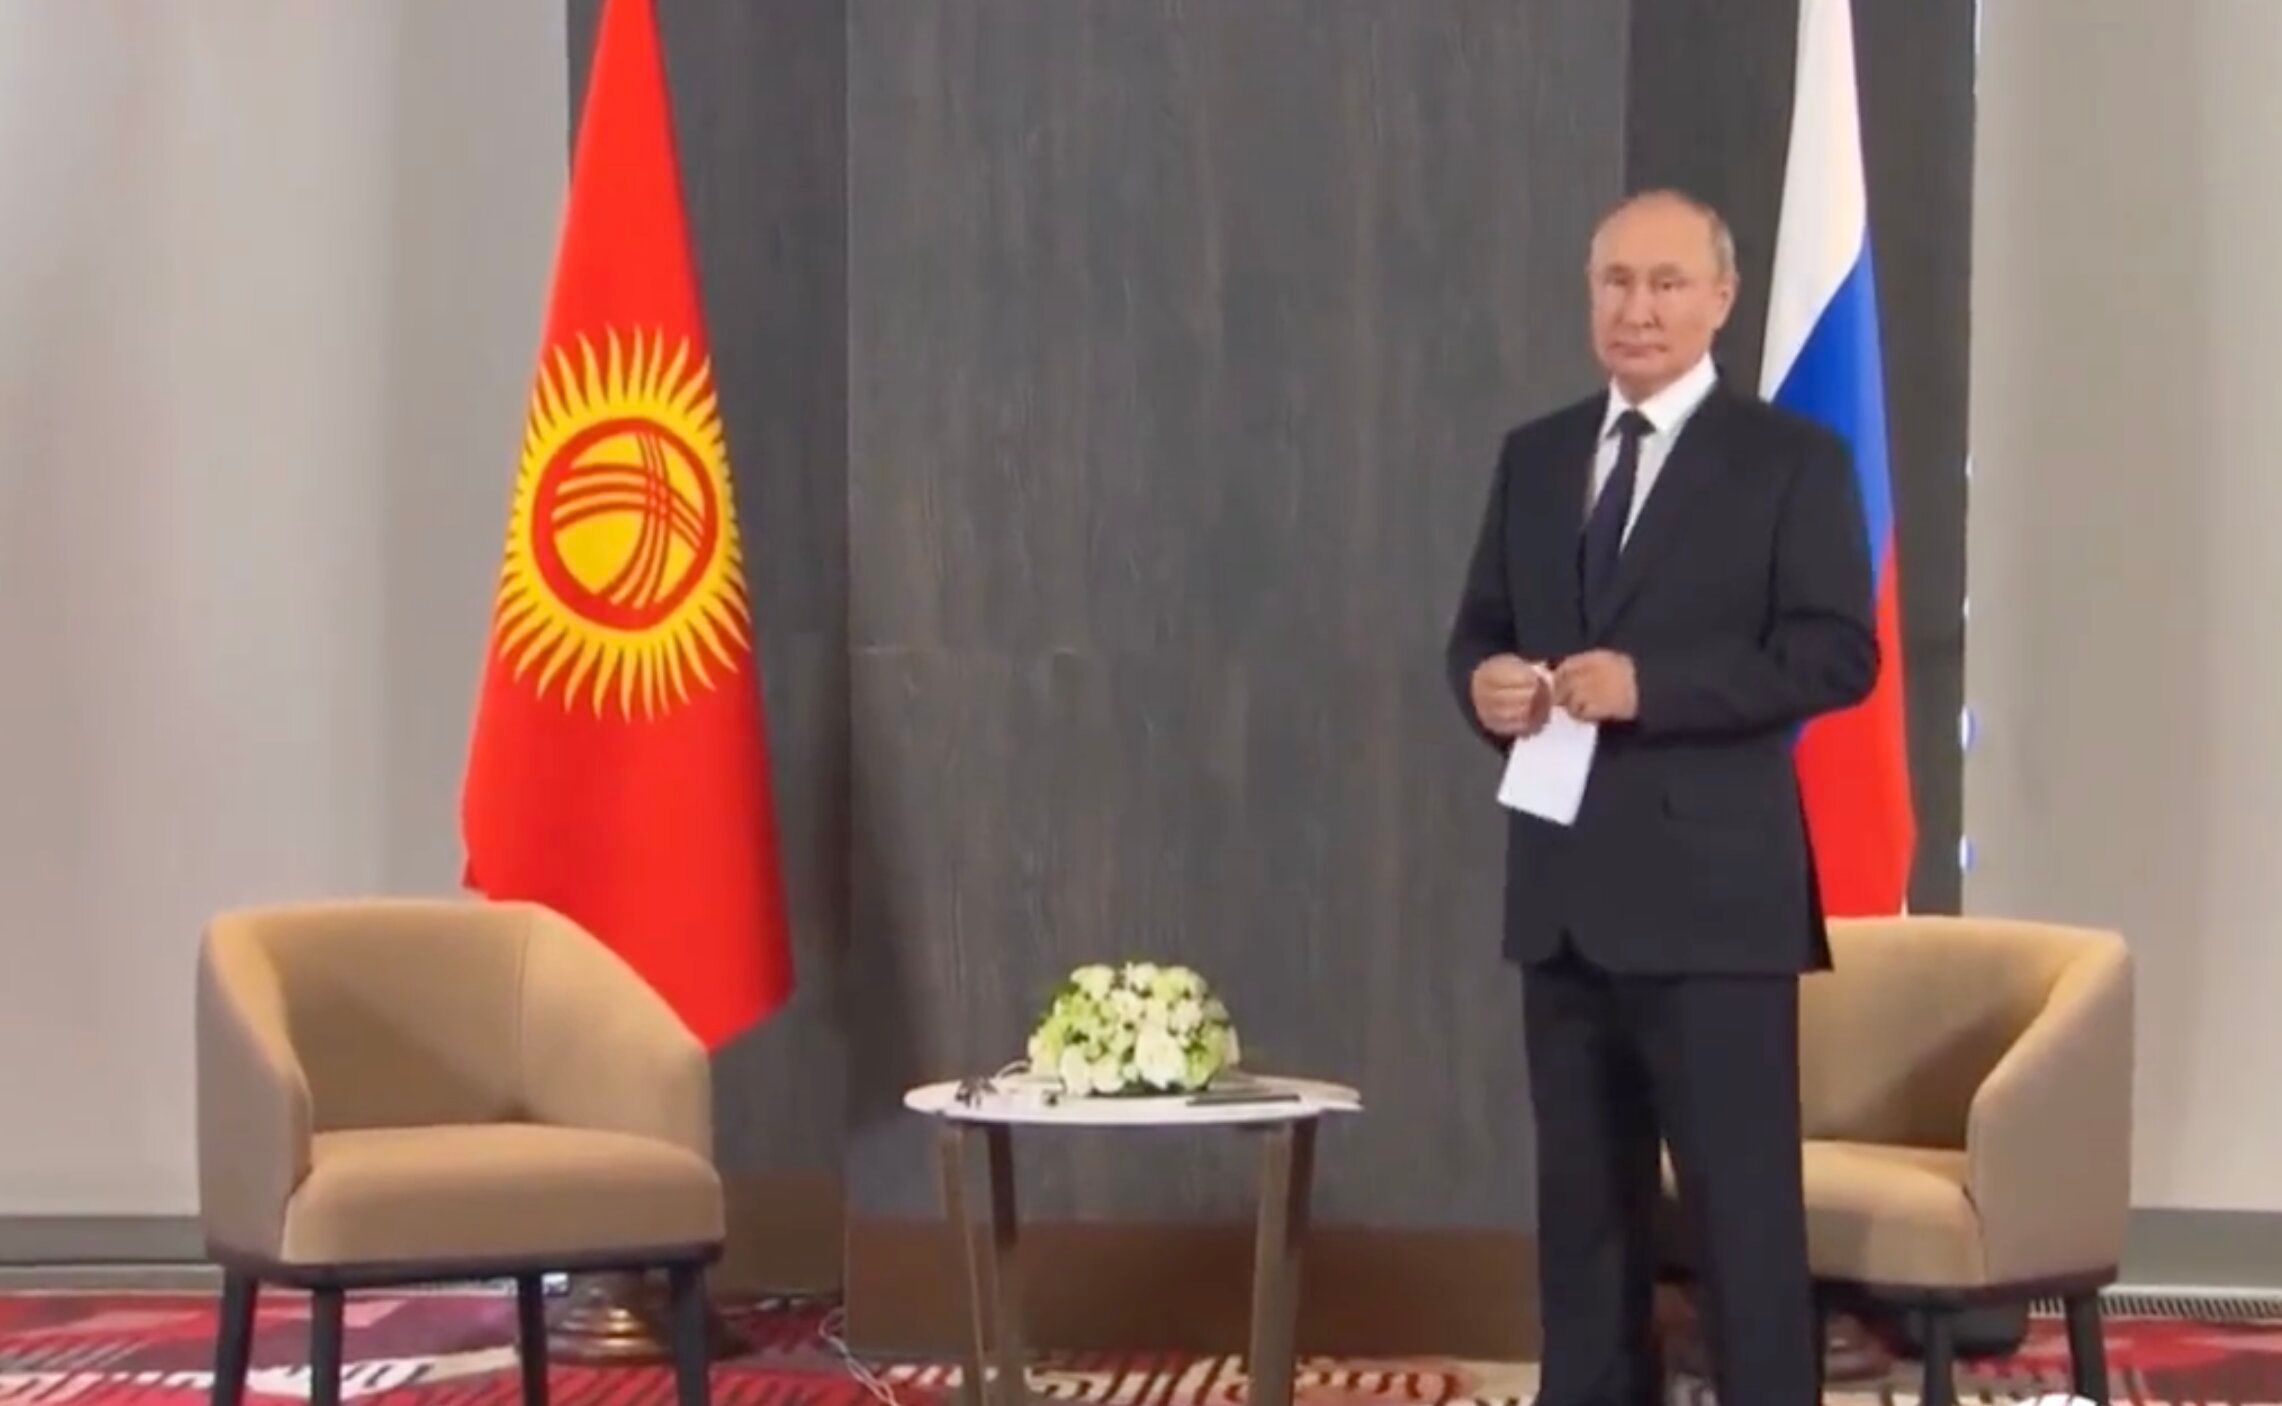 Путина заставили ждать - к нему на встречу опоздал президент Кыргызстана